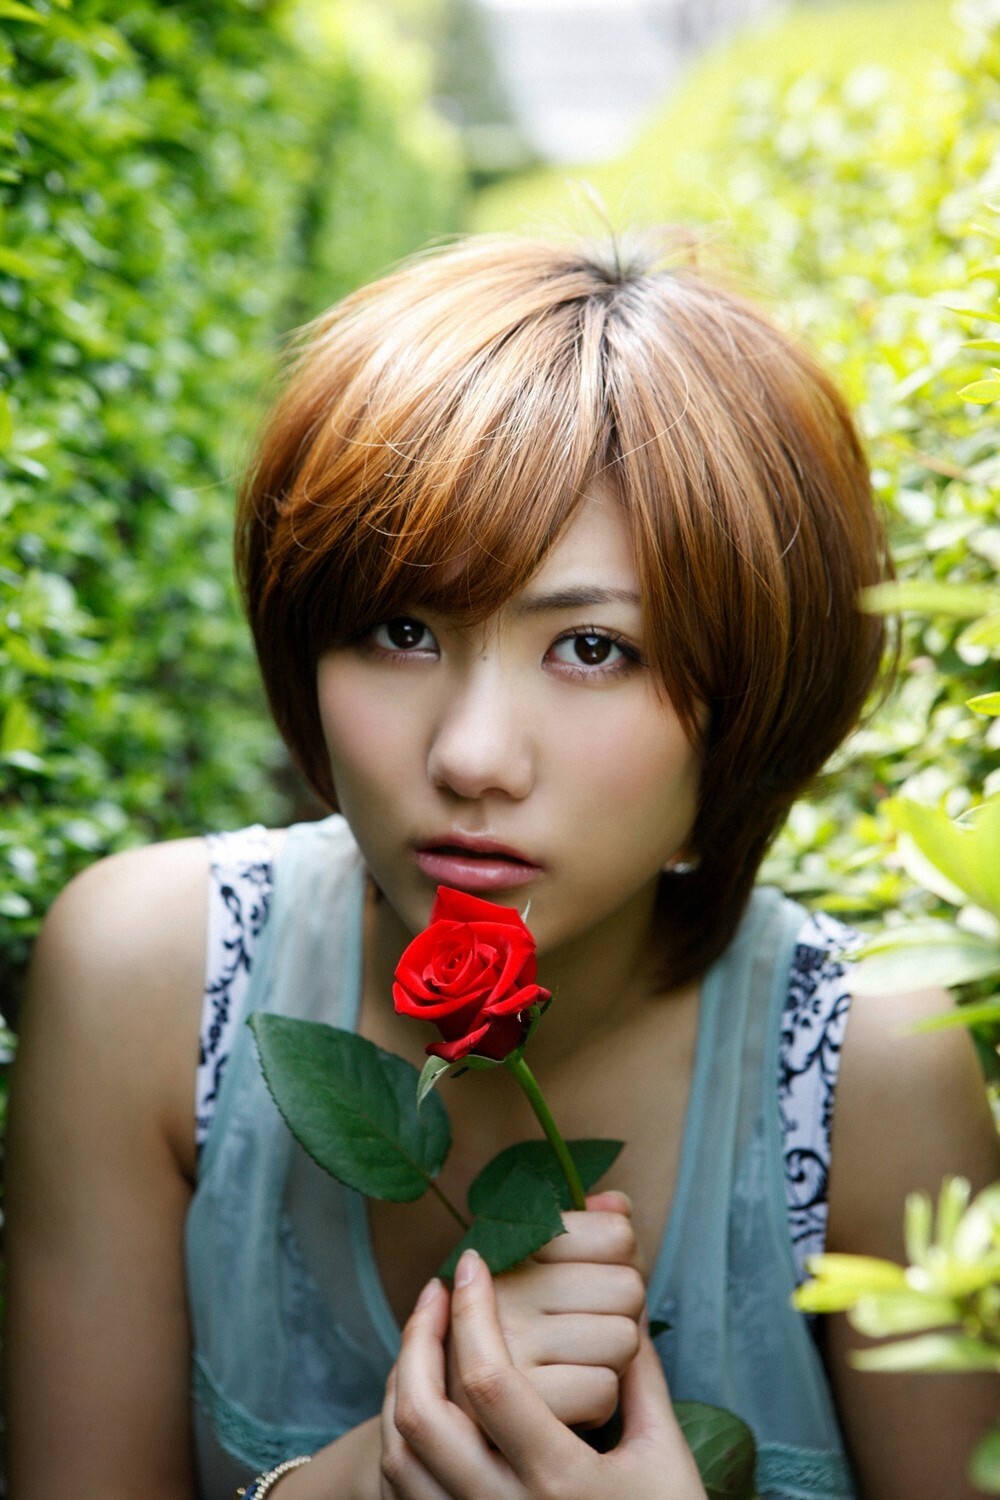 [ys web] vol.492 Sasaki Miyazawa pictures of Japanese sexy beauty